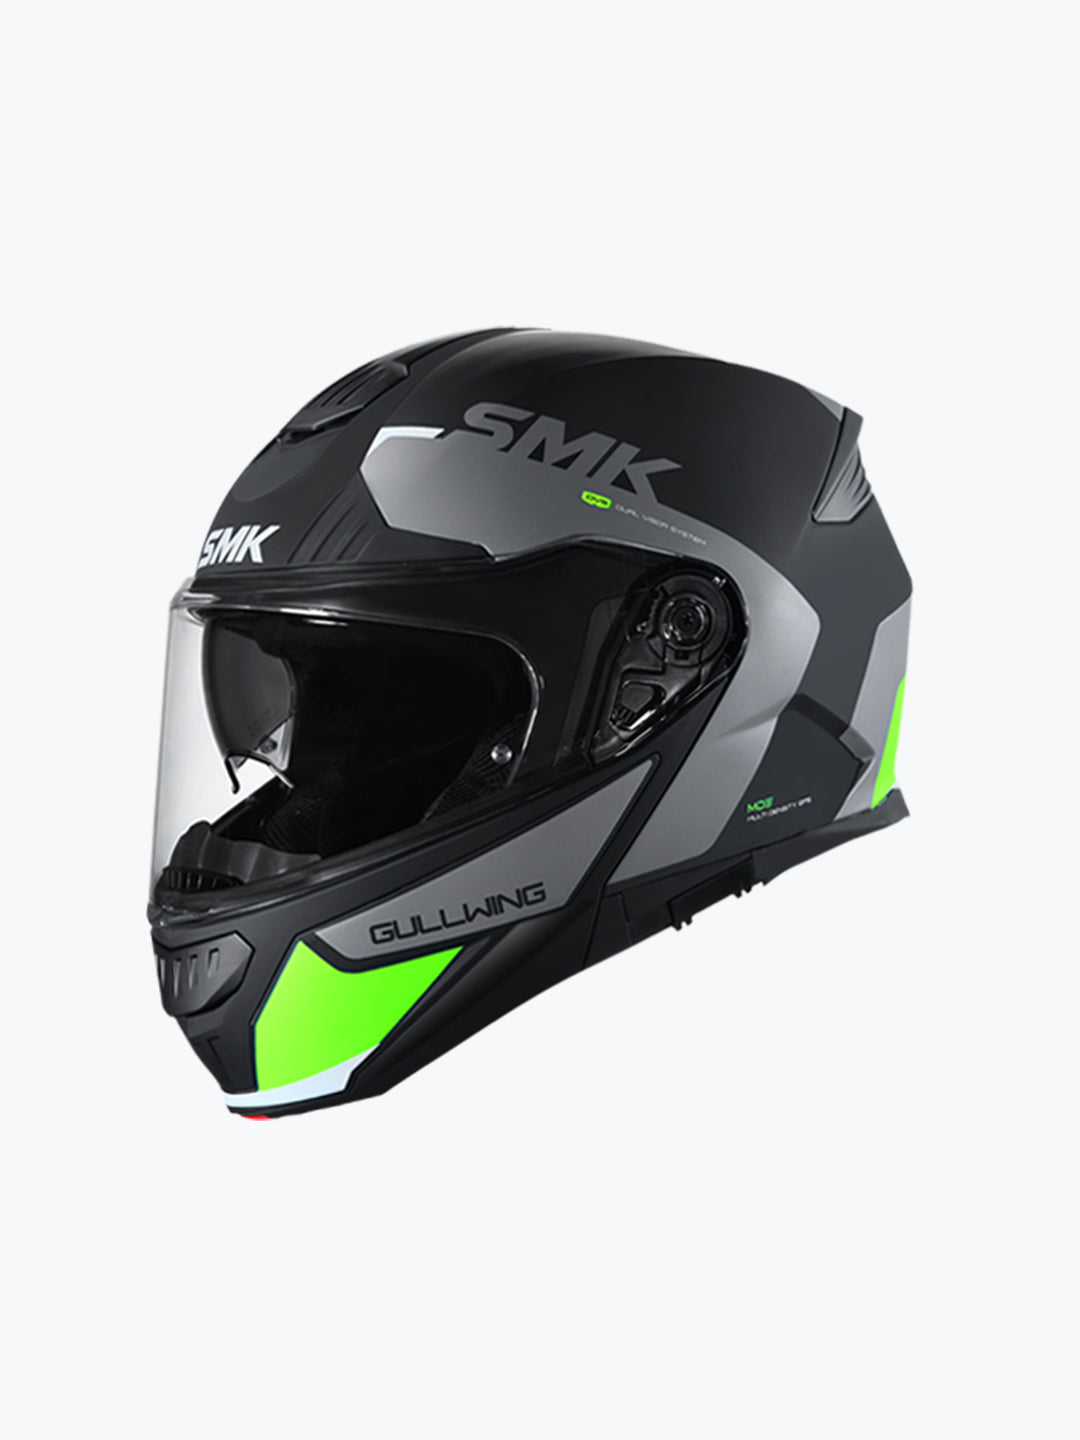 SMK Helmet Gullwing Kresto GL264